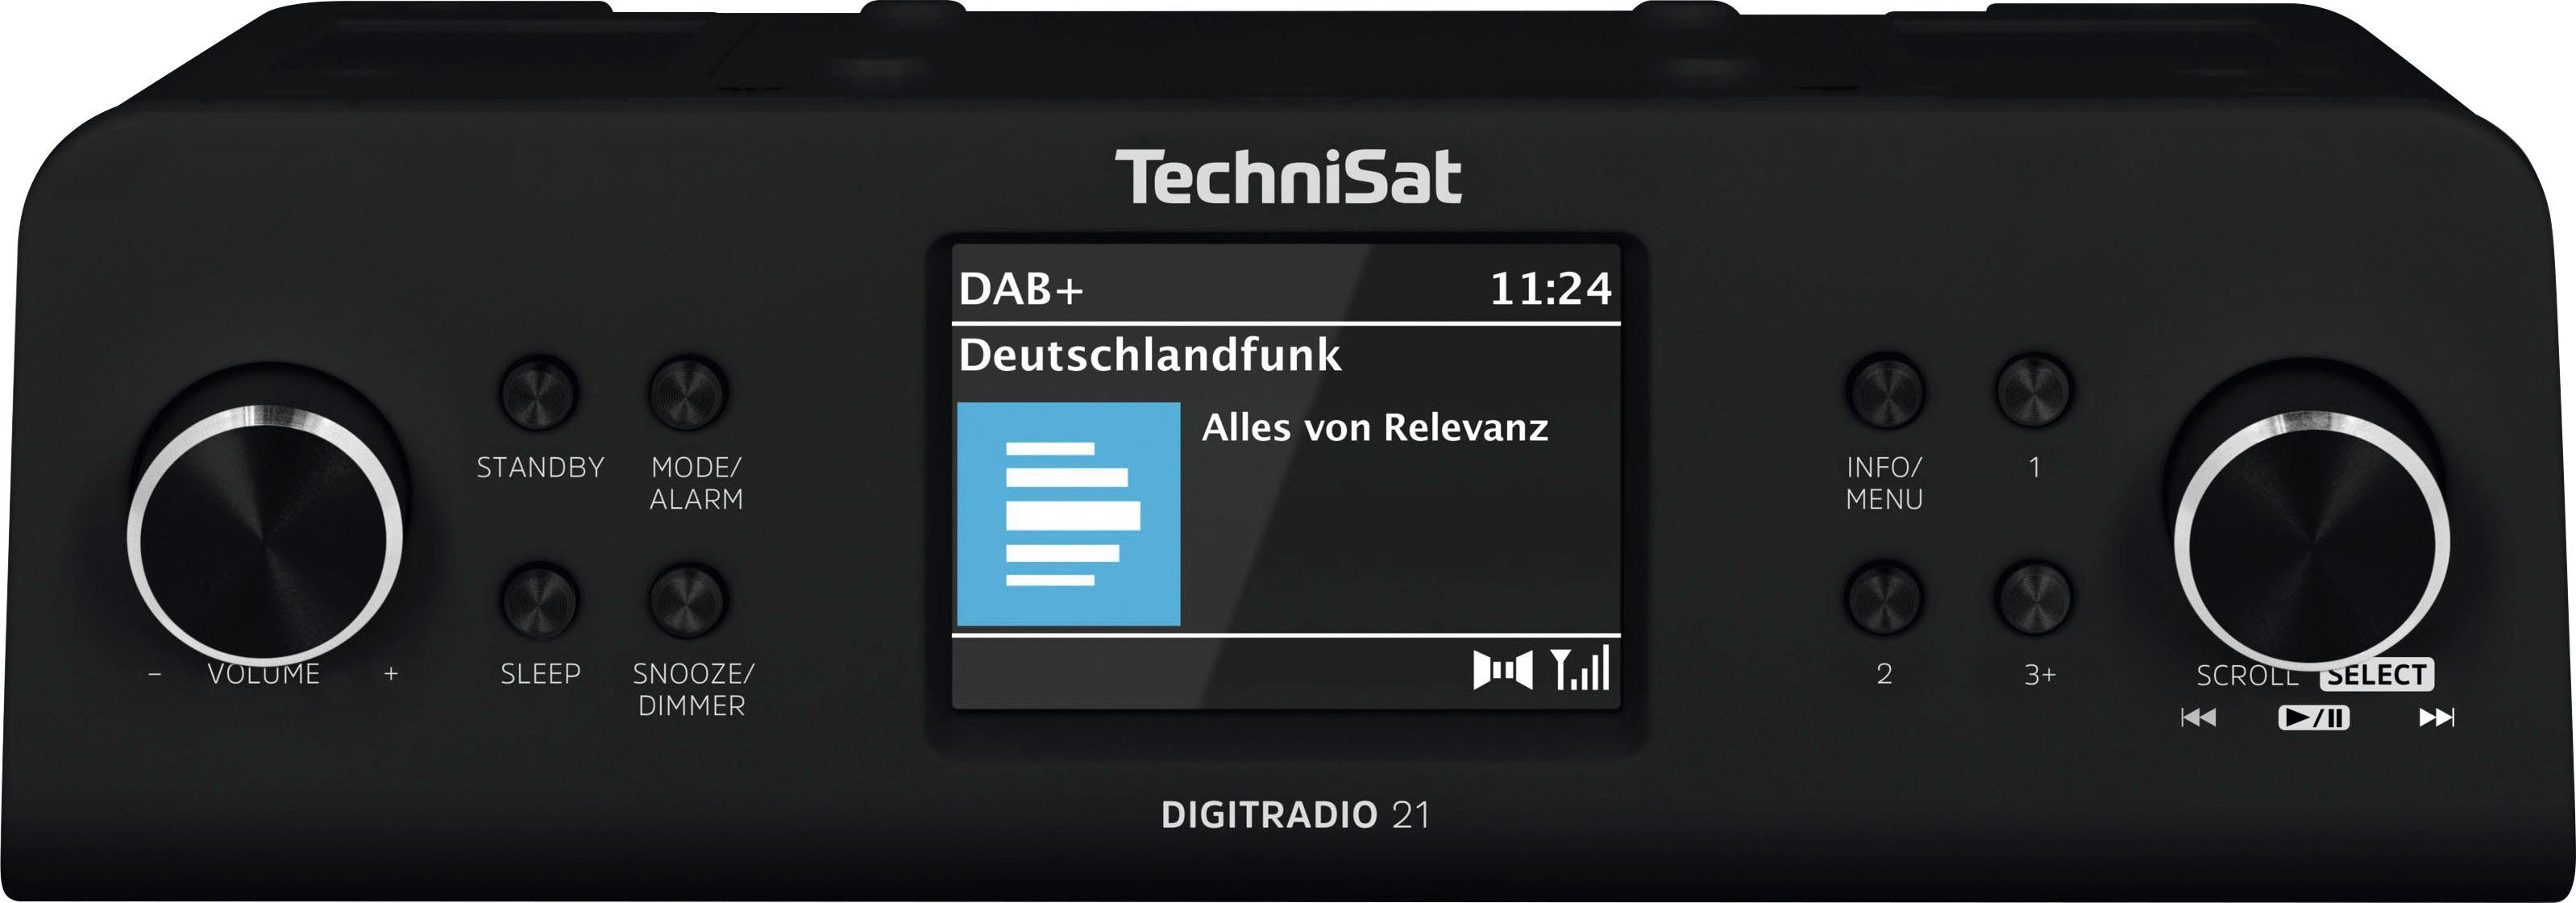 TechniSat (Digitalradio UKW W, Küchen-Radio 2 schwarz mit RDS, 21 (DAB), DIGITRADIO Unterbau-Radio,Küchen-Radio)